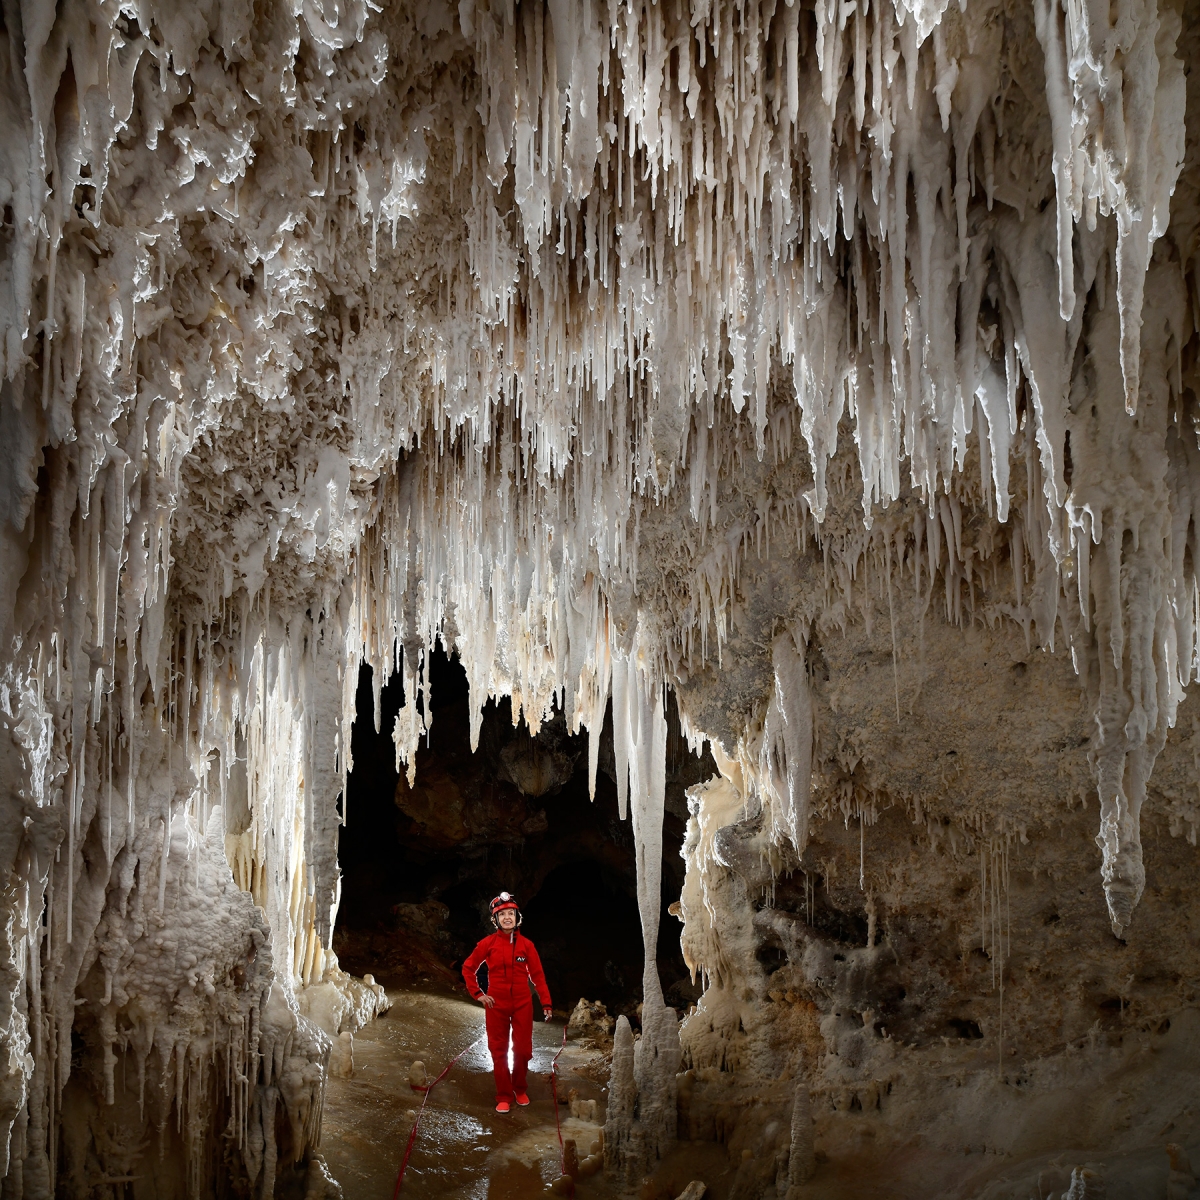 Carlsbad Cavern New Mexico Room (USA - Nouveau Mexique) - Petite galerie couverte de concrétions blanches sèches. La galerie est balisée et le spéléo porte des sandales propres pour ne pas salir le sol couvert de calcite